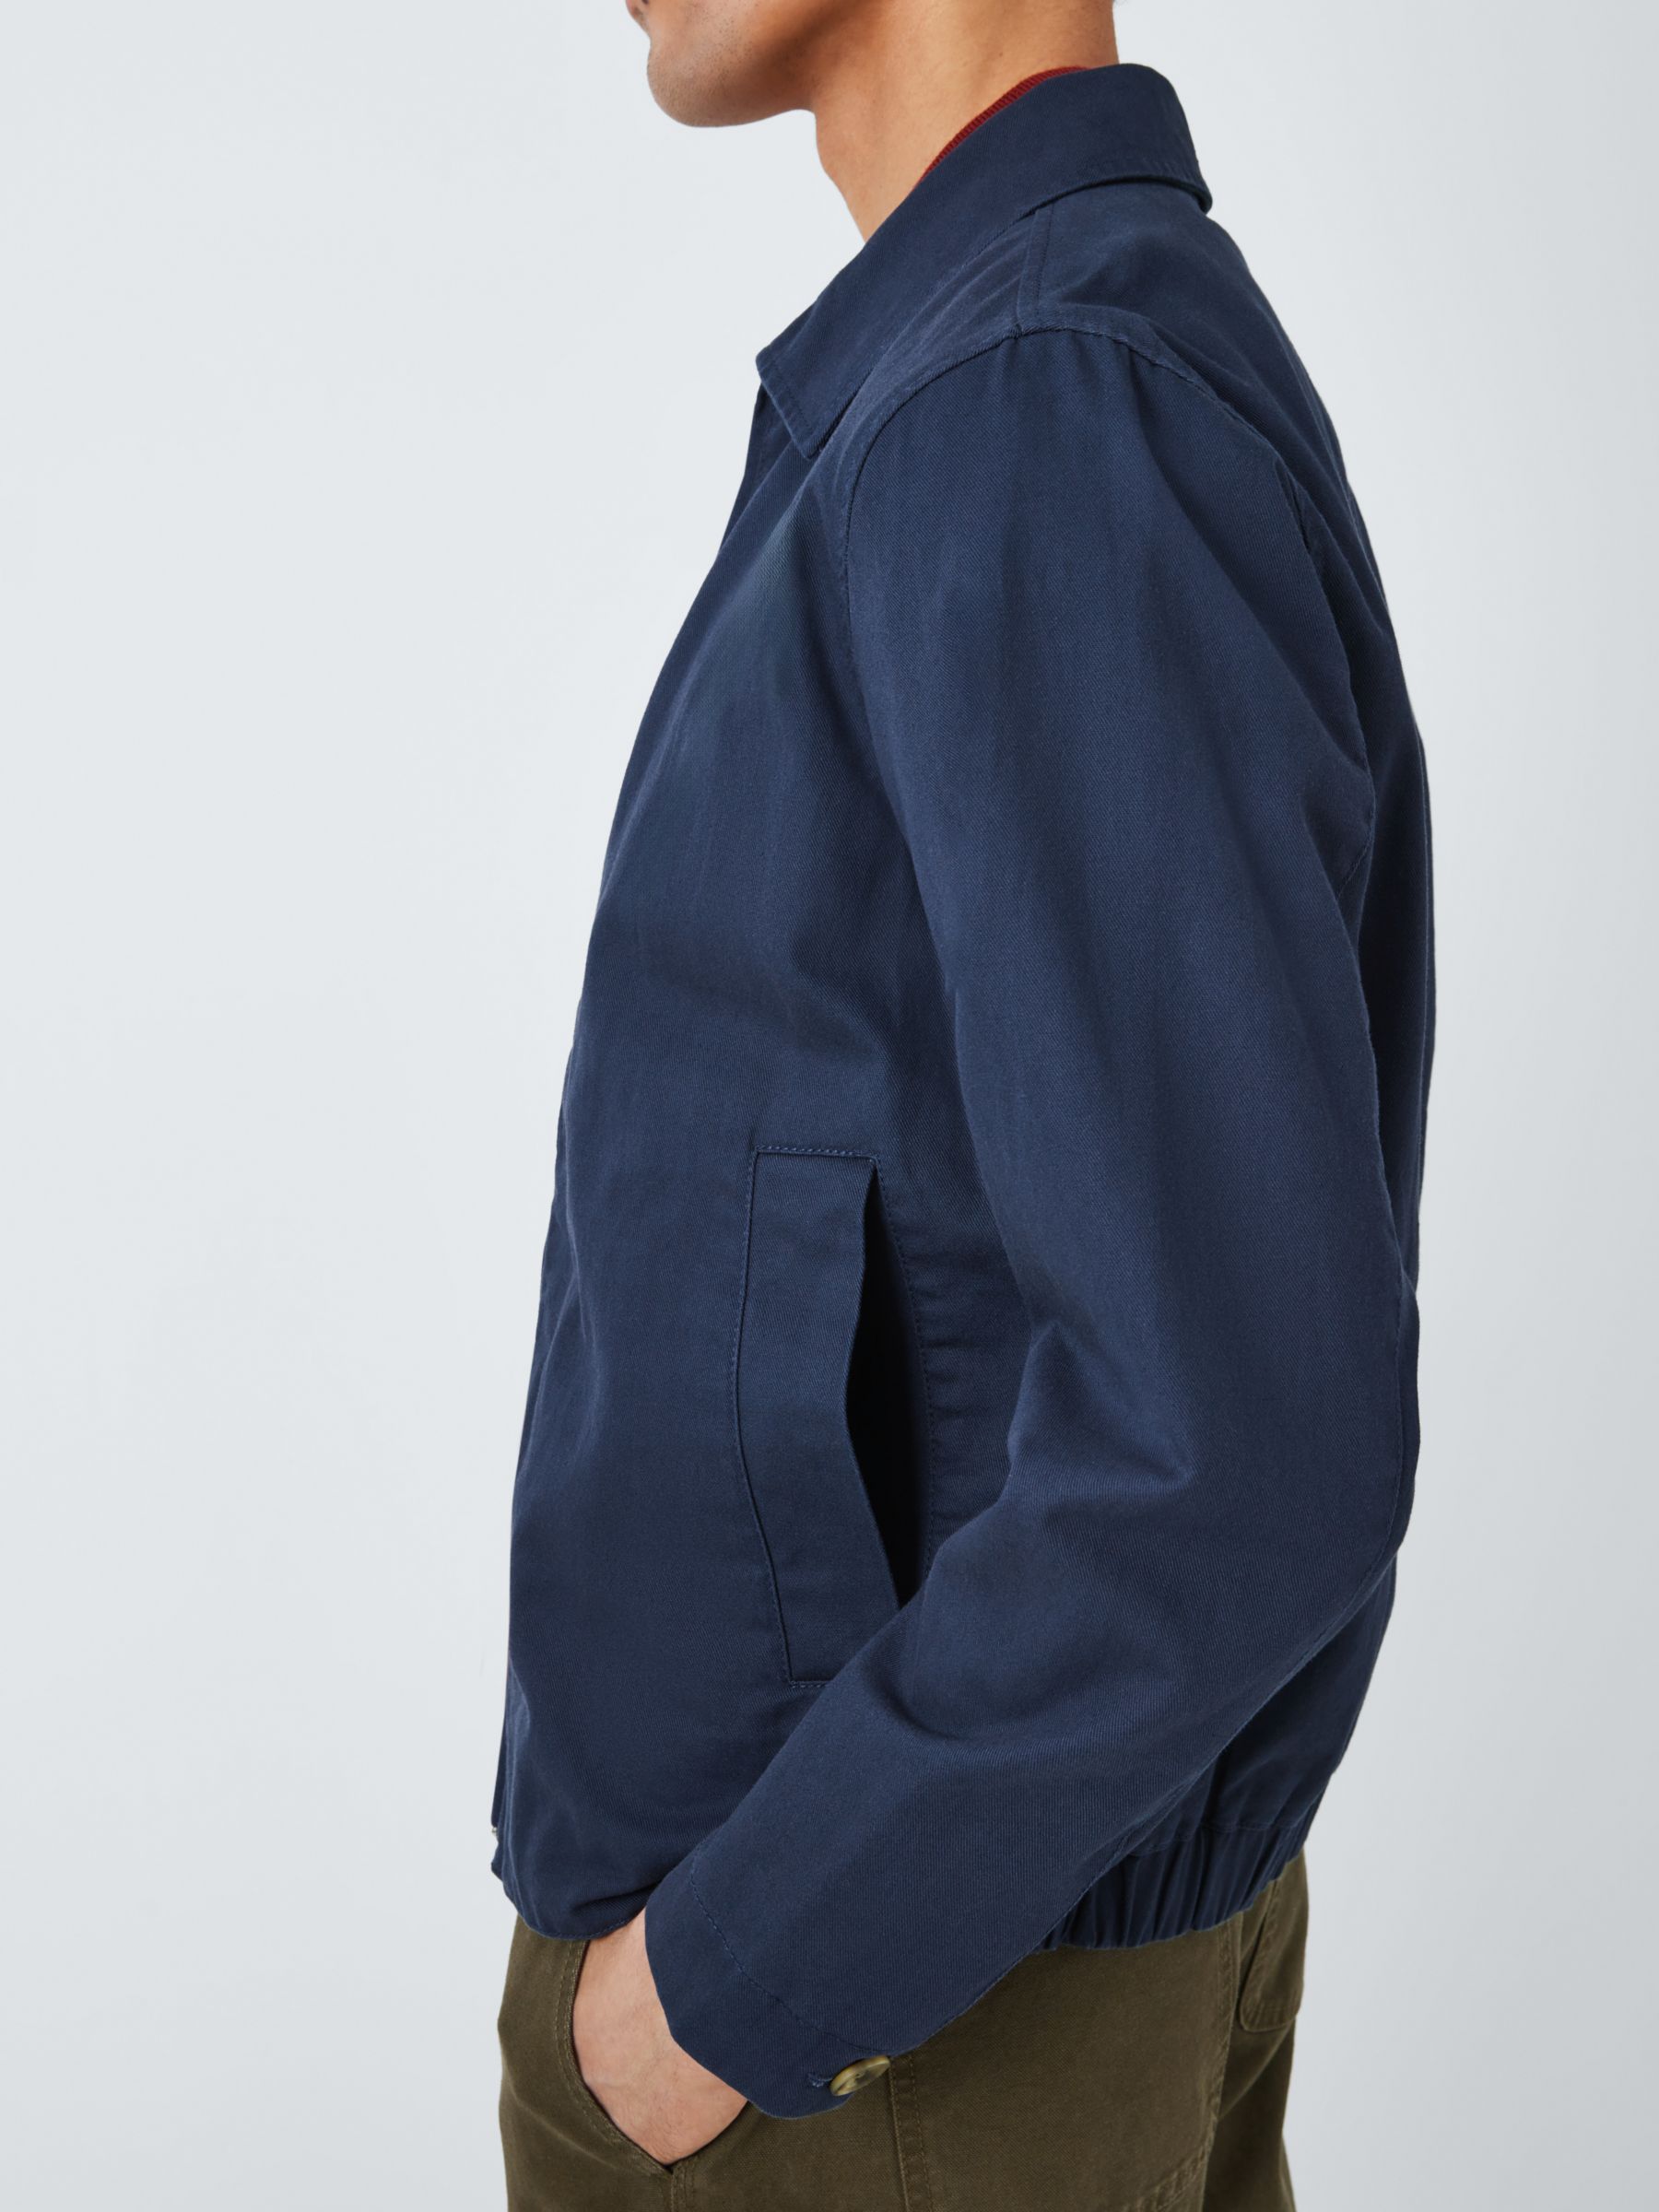 John Lewis Men's Cotton Linen Zip Jacket, Navy, M